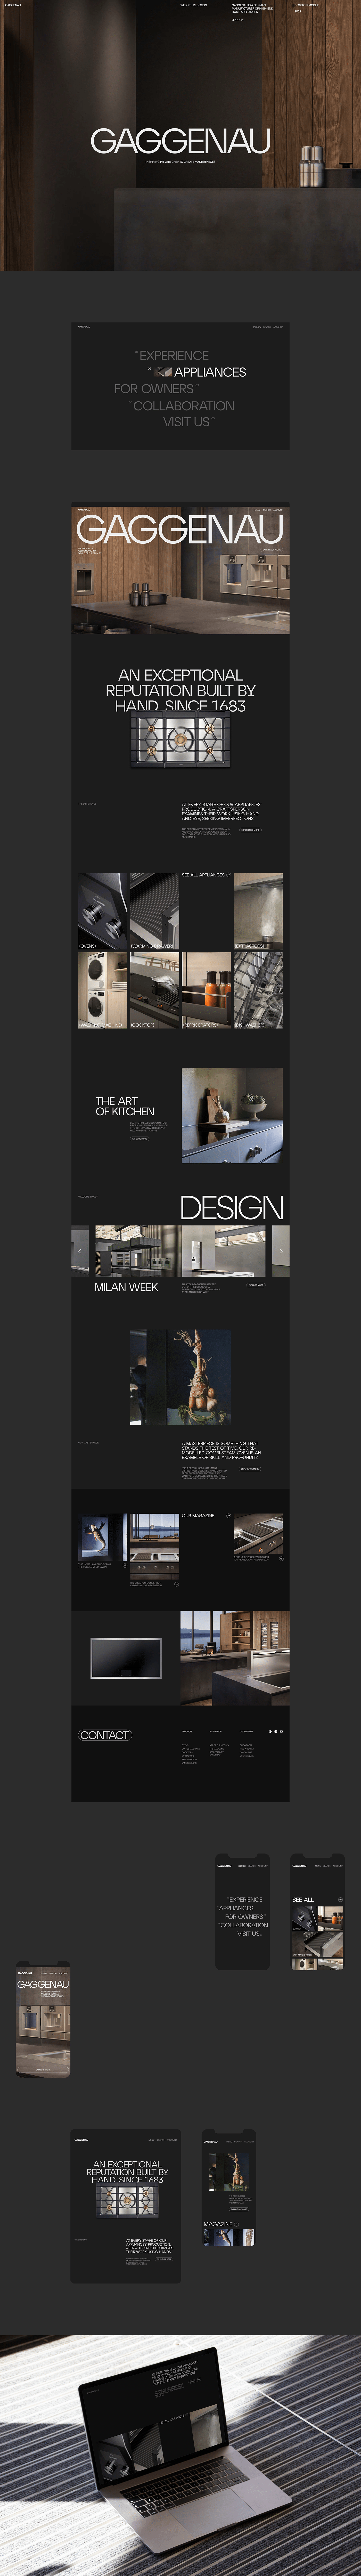 corporate design Figma UI UI/UX user interface ux Web Design  Website Website Design